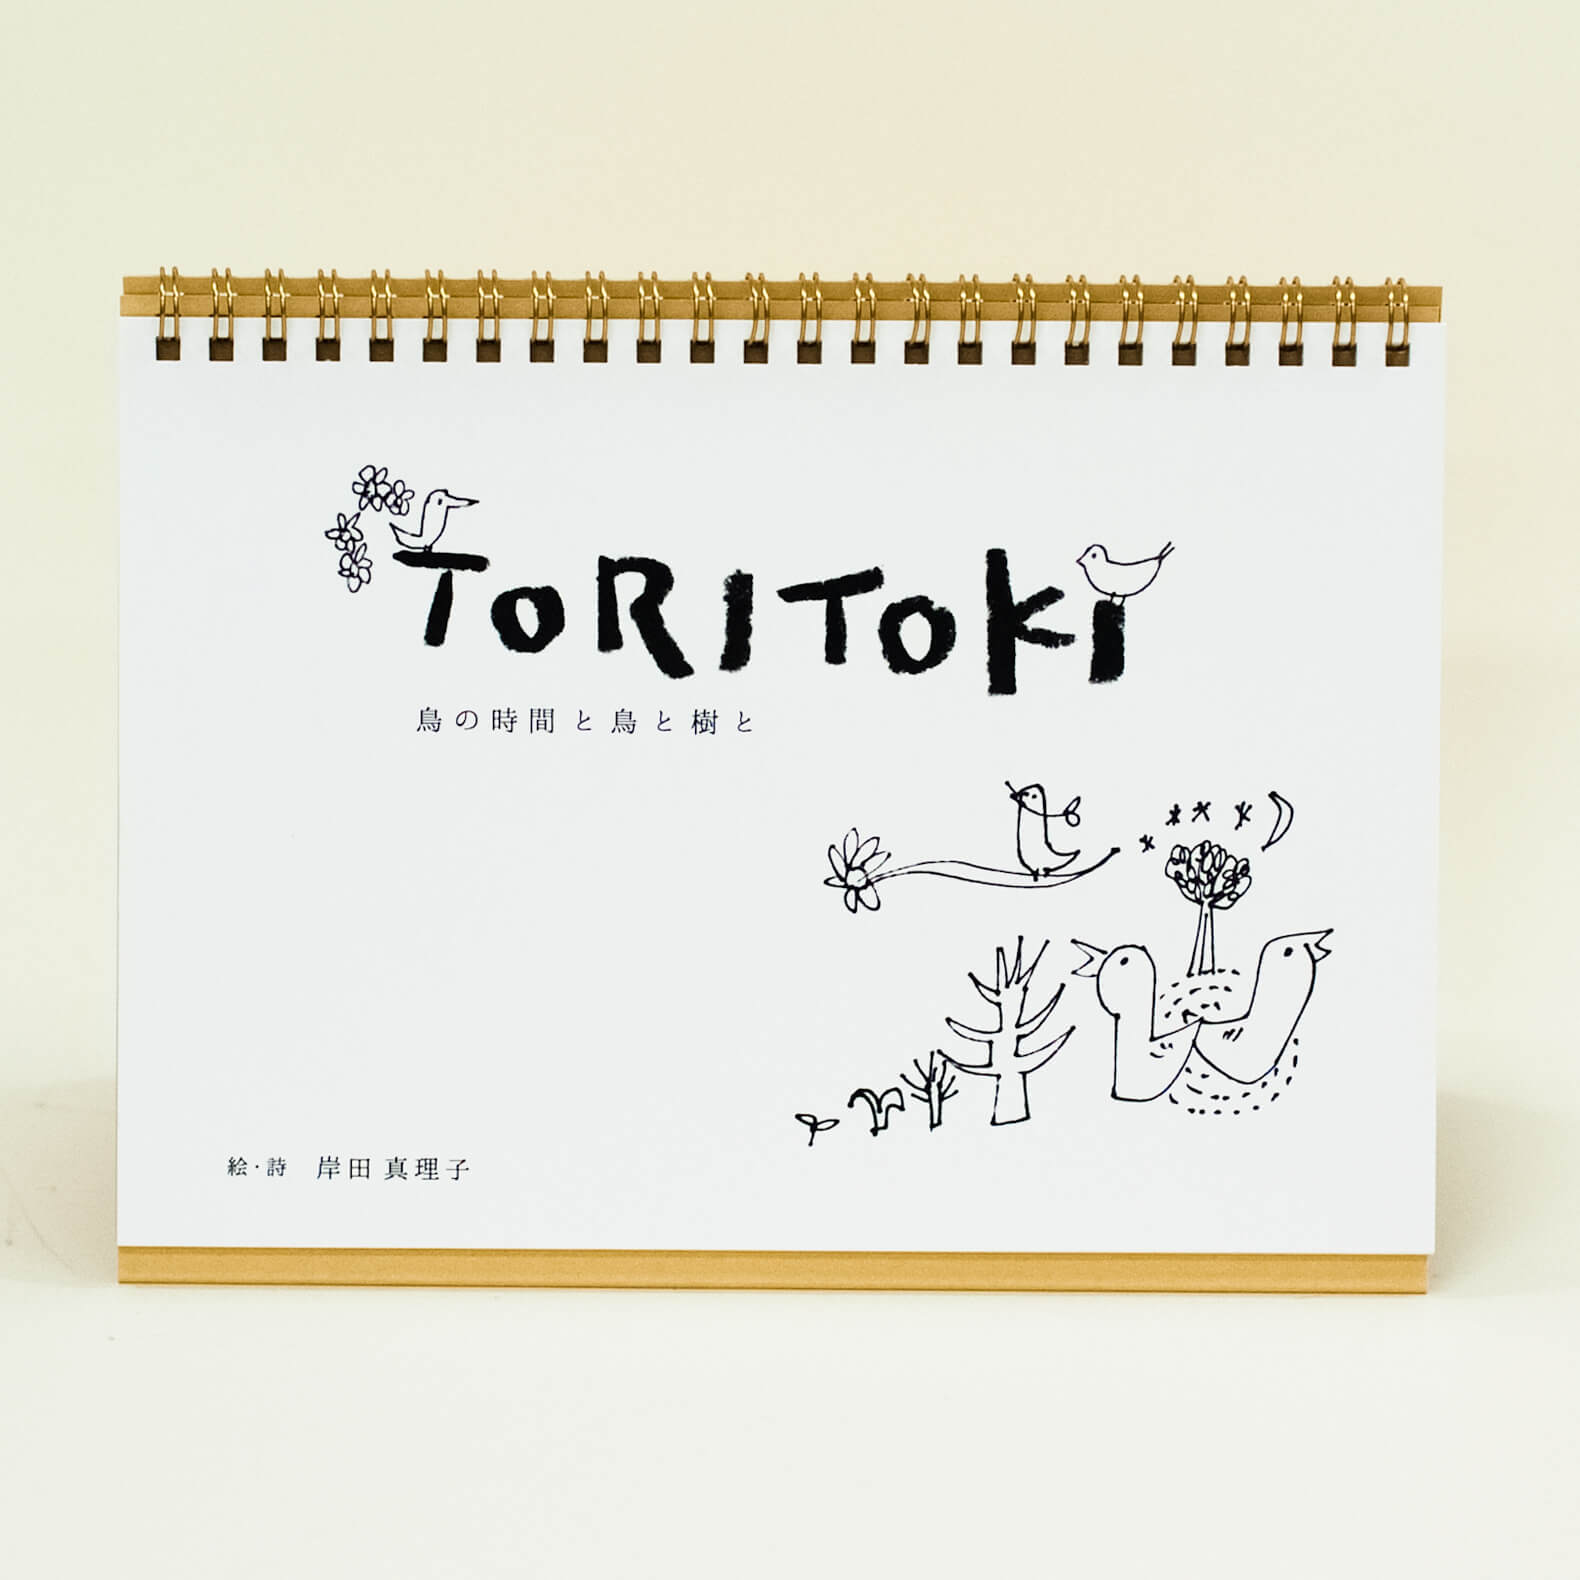 「藪亀  雅子 様」製作のオリジナルカレンダー